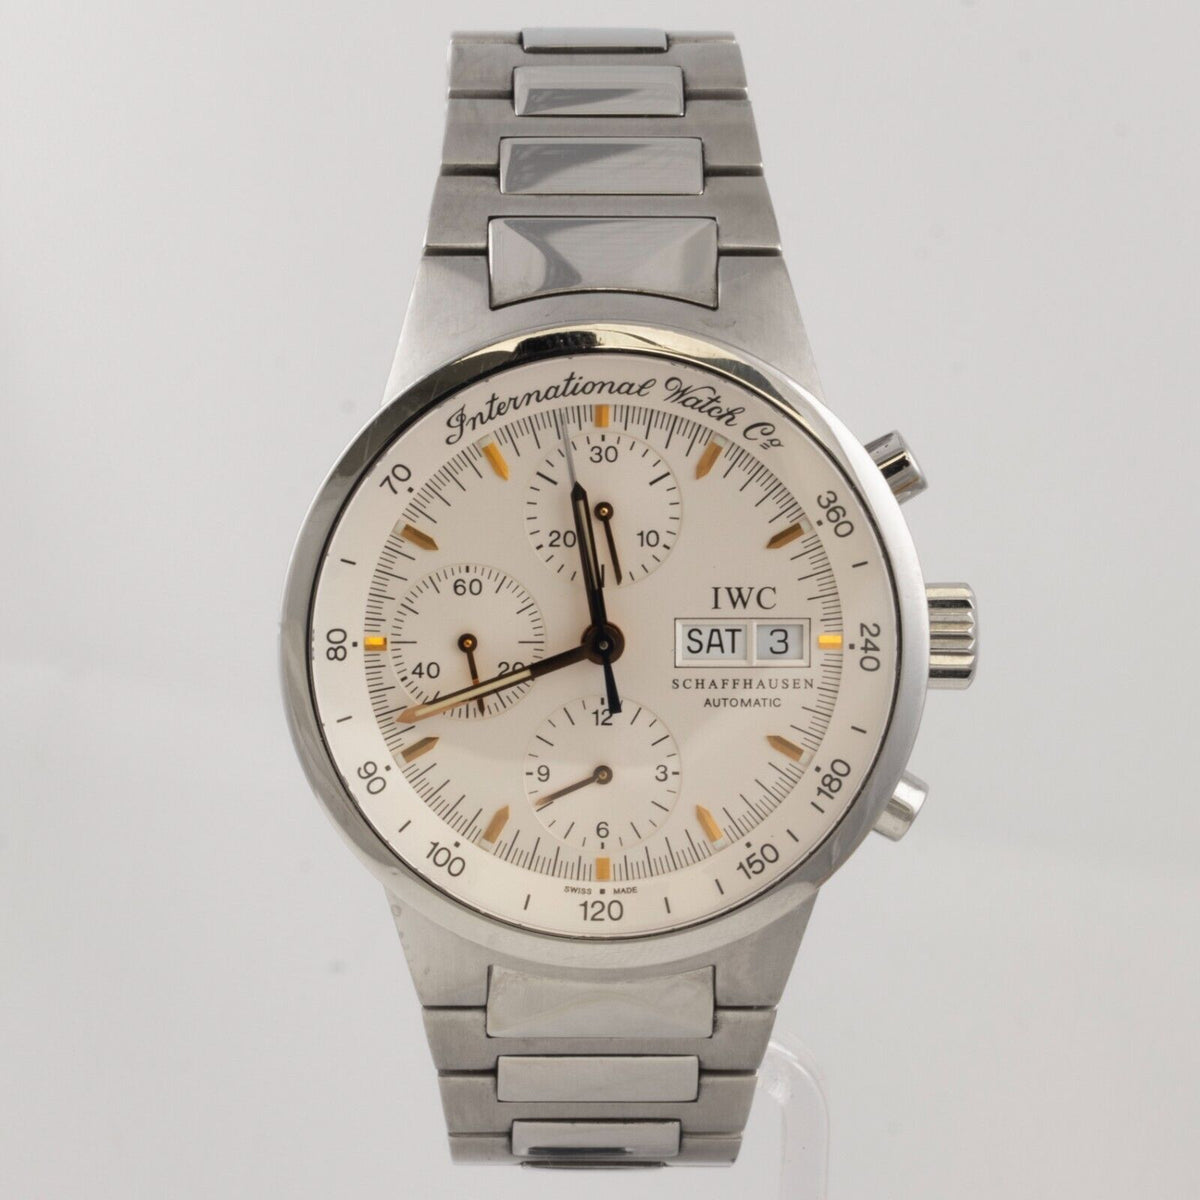 IWC Schaffhausen GST Chronograph Steel White Dial 39mm Watch IW370713